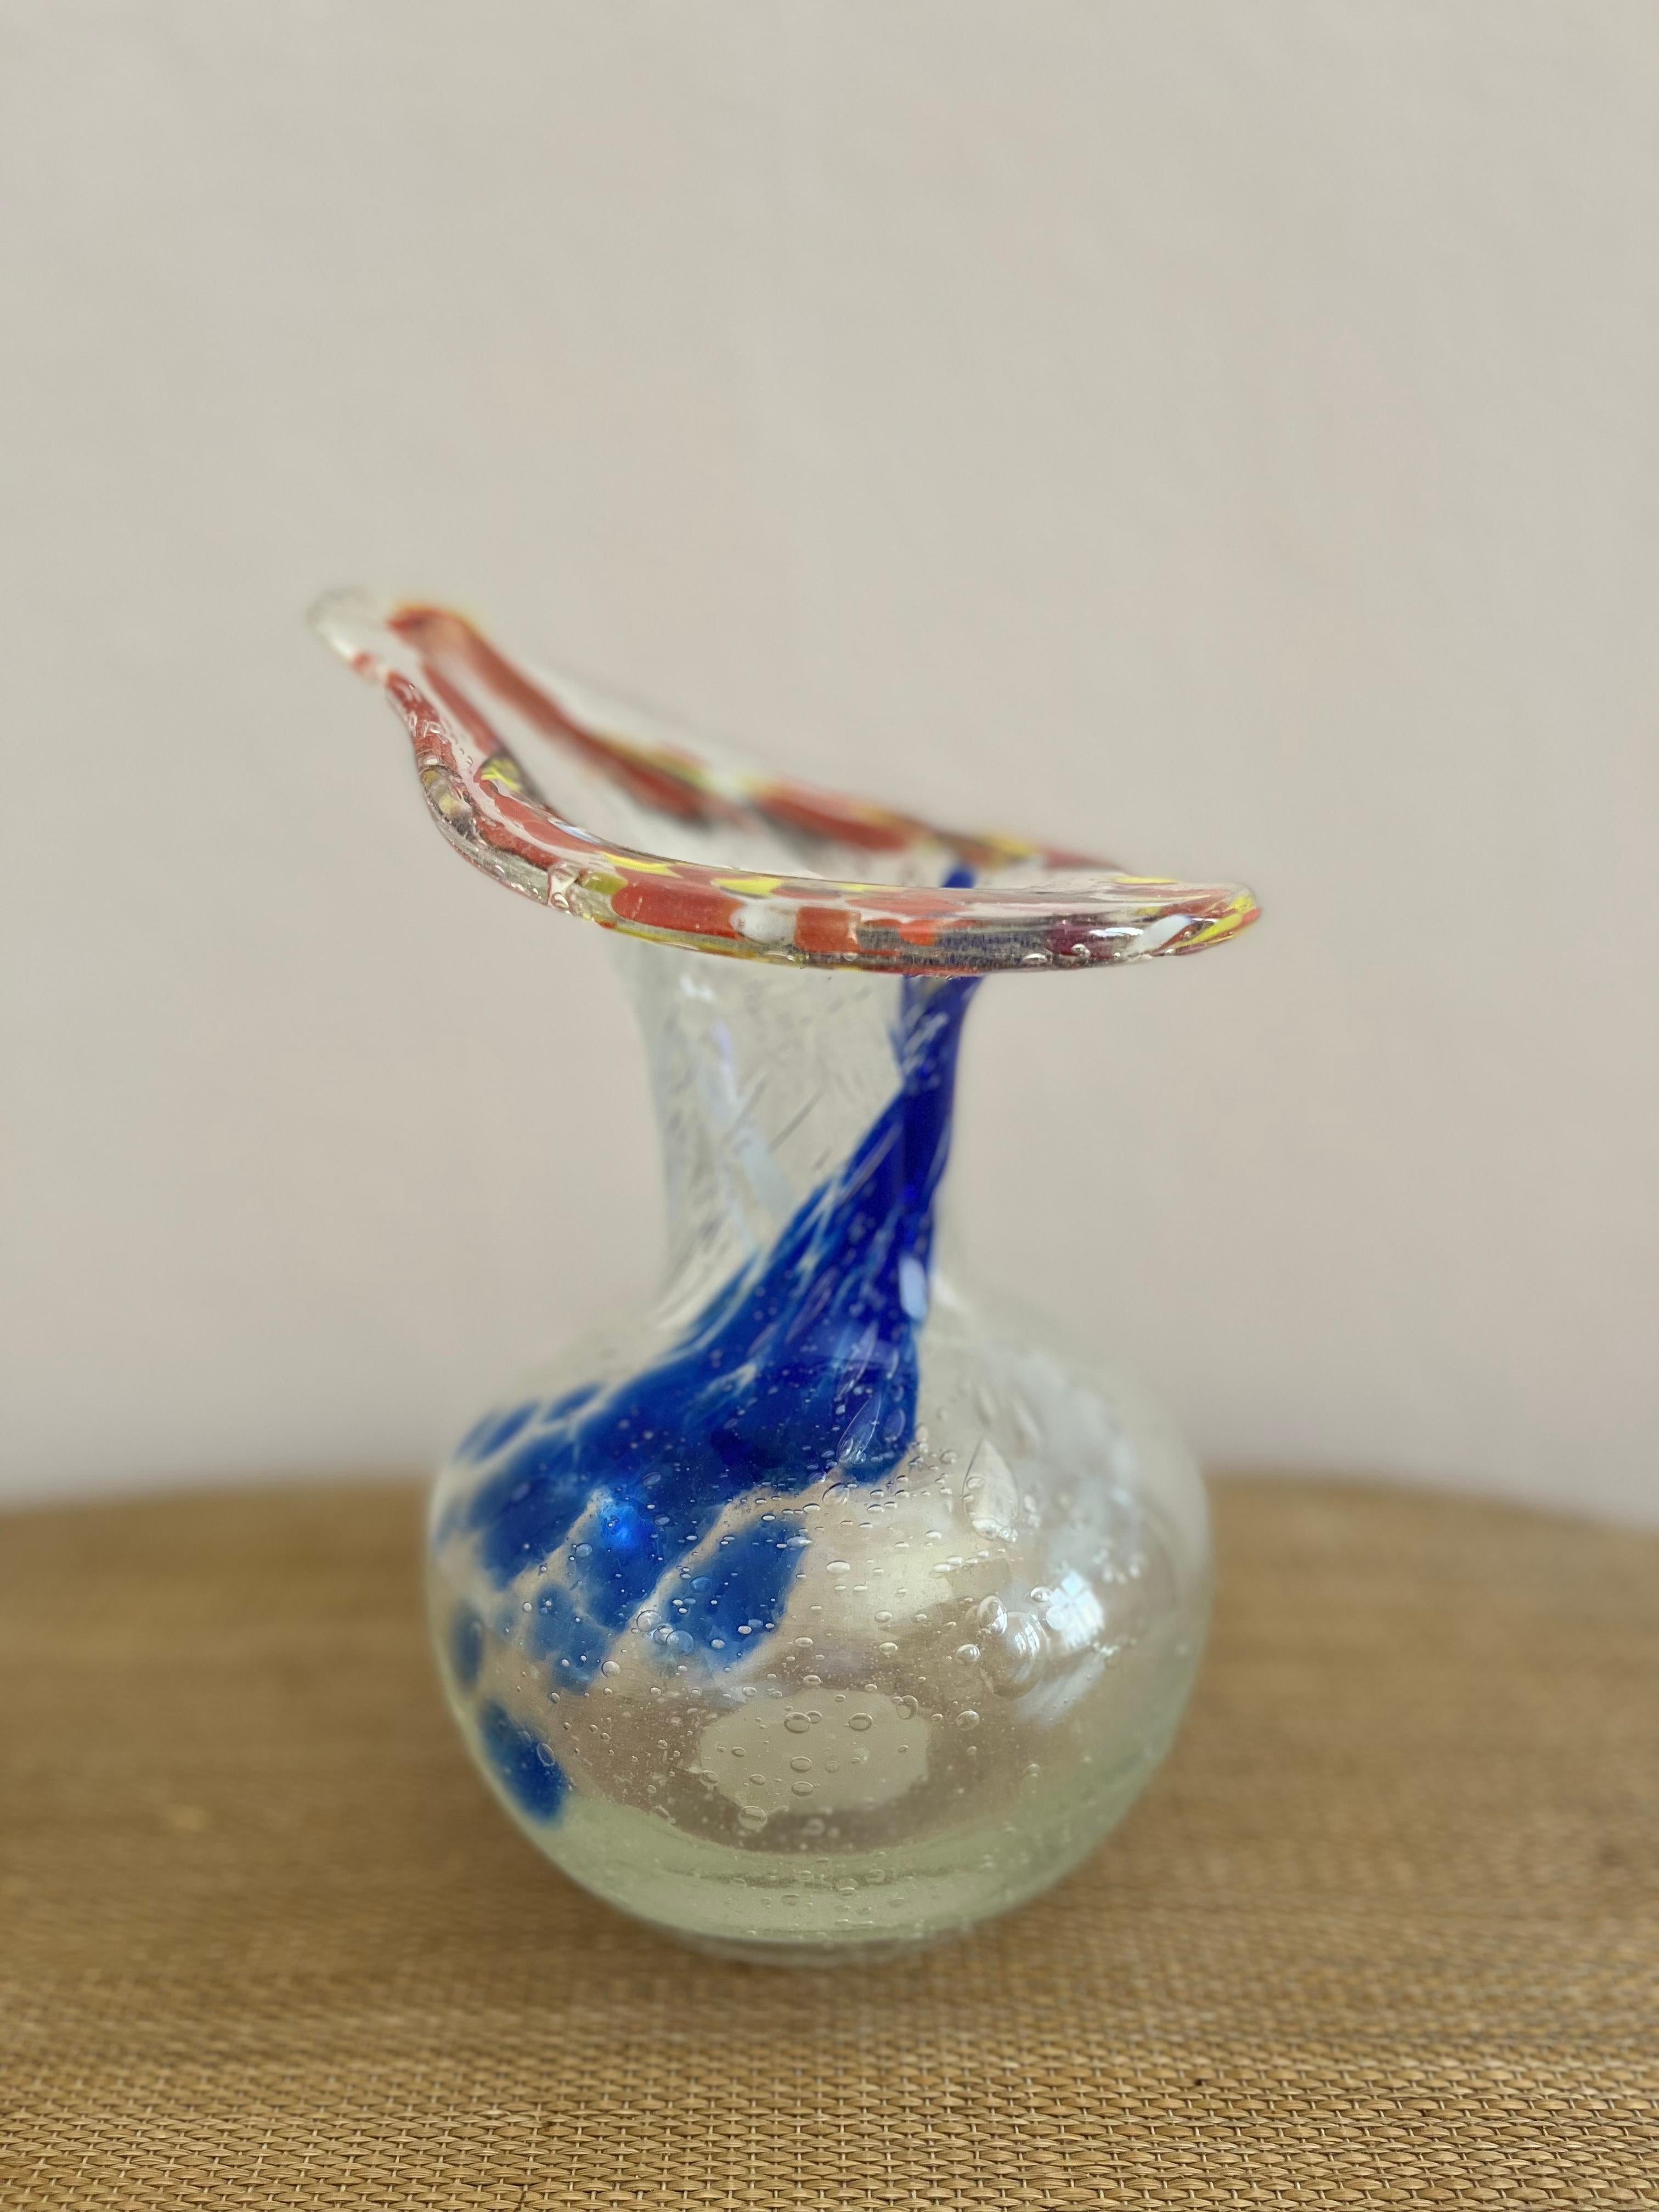 Vase d'art en verre suédois aux formes organiques.

Vase d'art en verre suédois fait à la main, disponible en transparent, bleu, orange, jaune et rouge. Bulles dans le verre, œuvre d'art en verre.

Hauteur : 20 cm. 